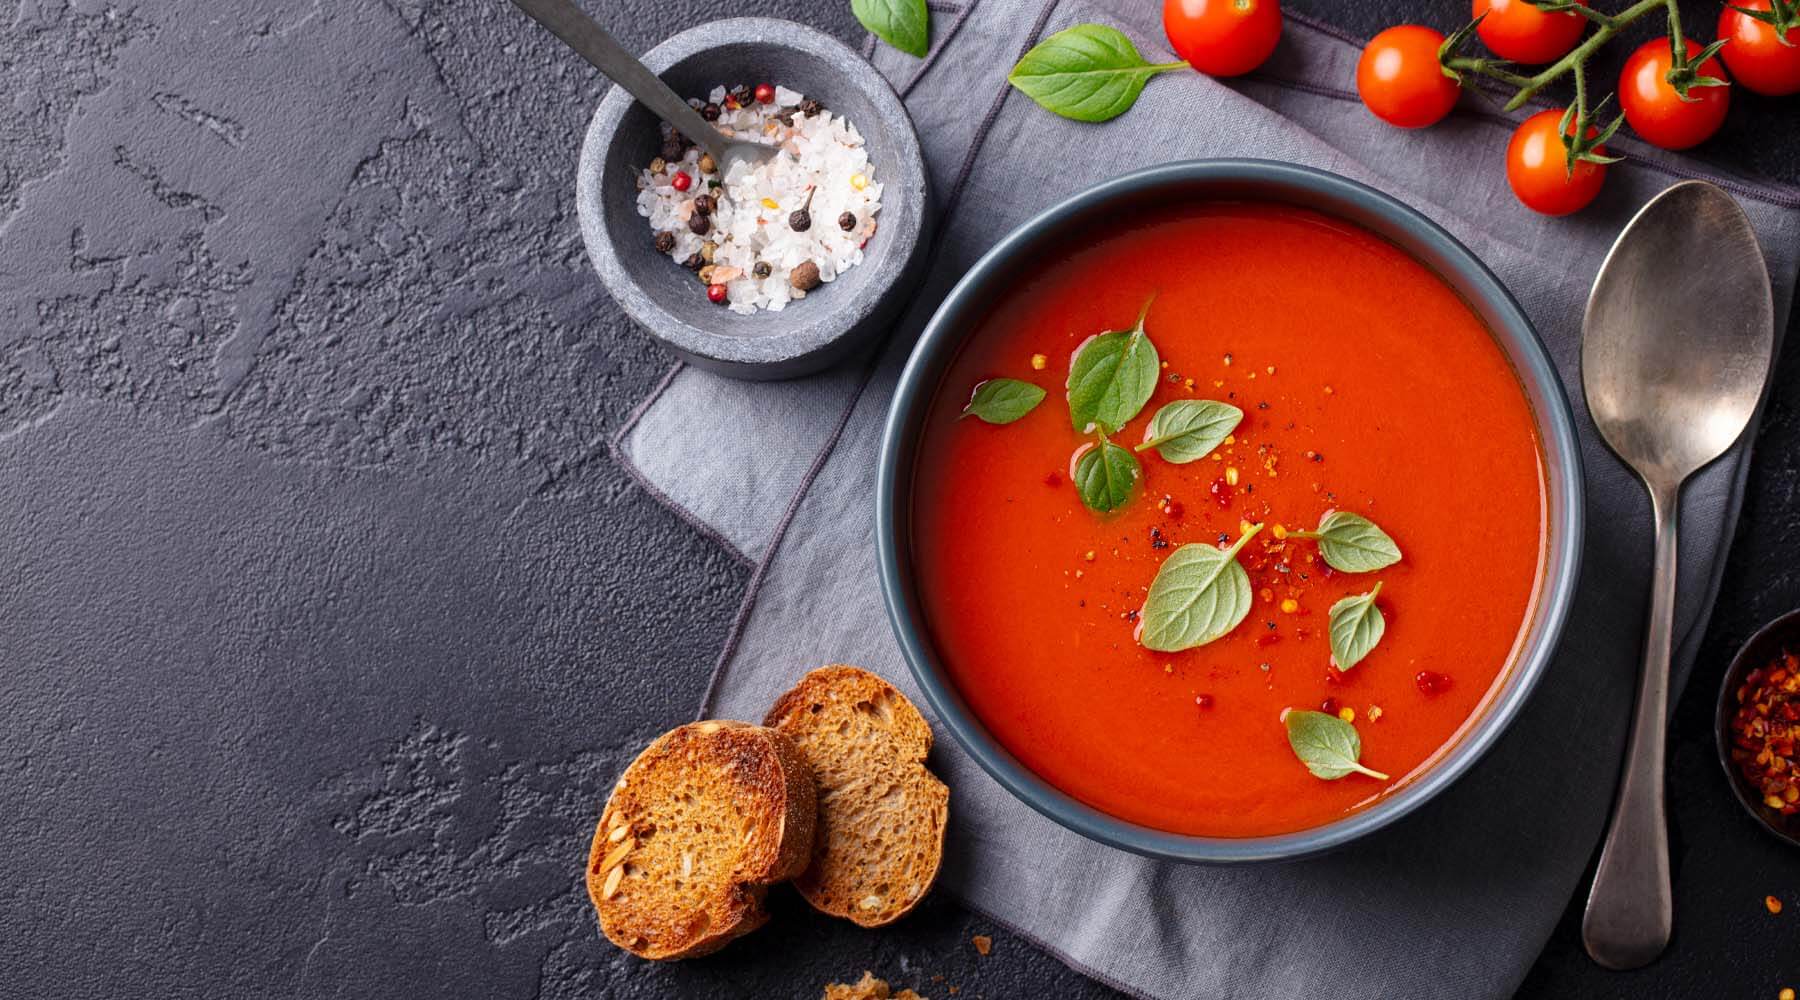 Tasty Tomato & Basil Soup (In A Soup Maker) - Liana's Kitchen